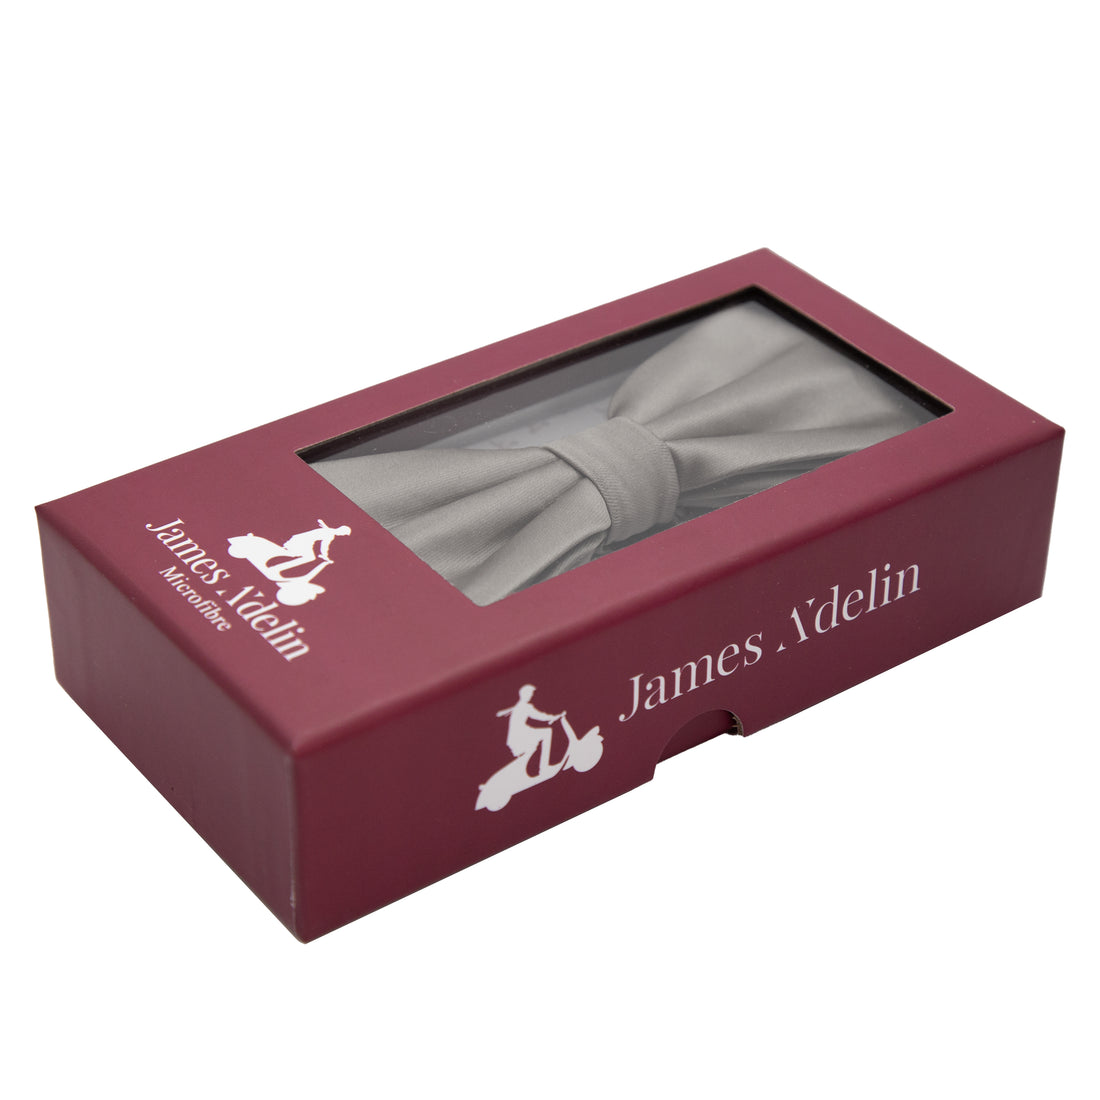 James Adelin Luxury Satin Weave Bow Tie in Mushroom